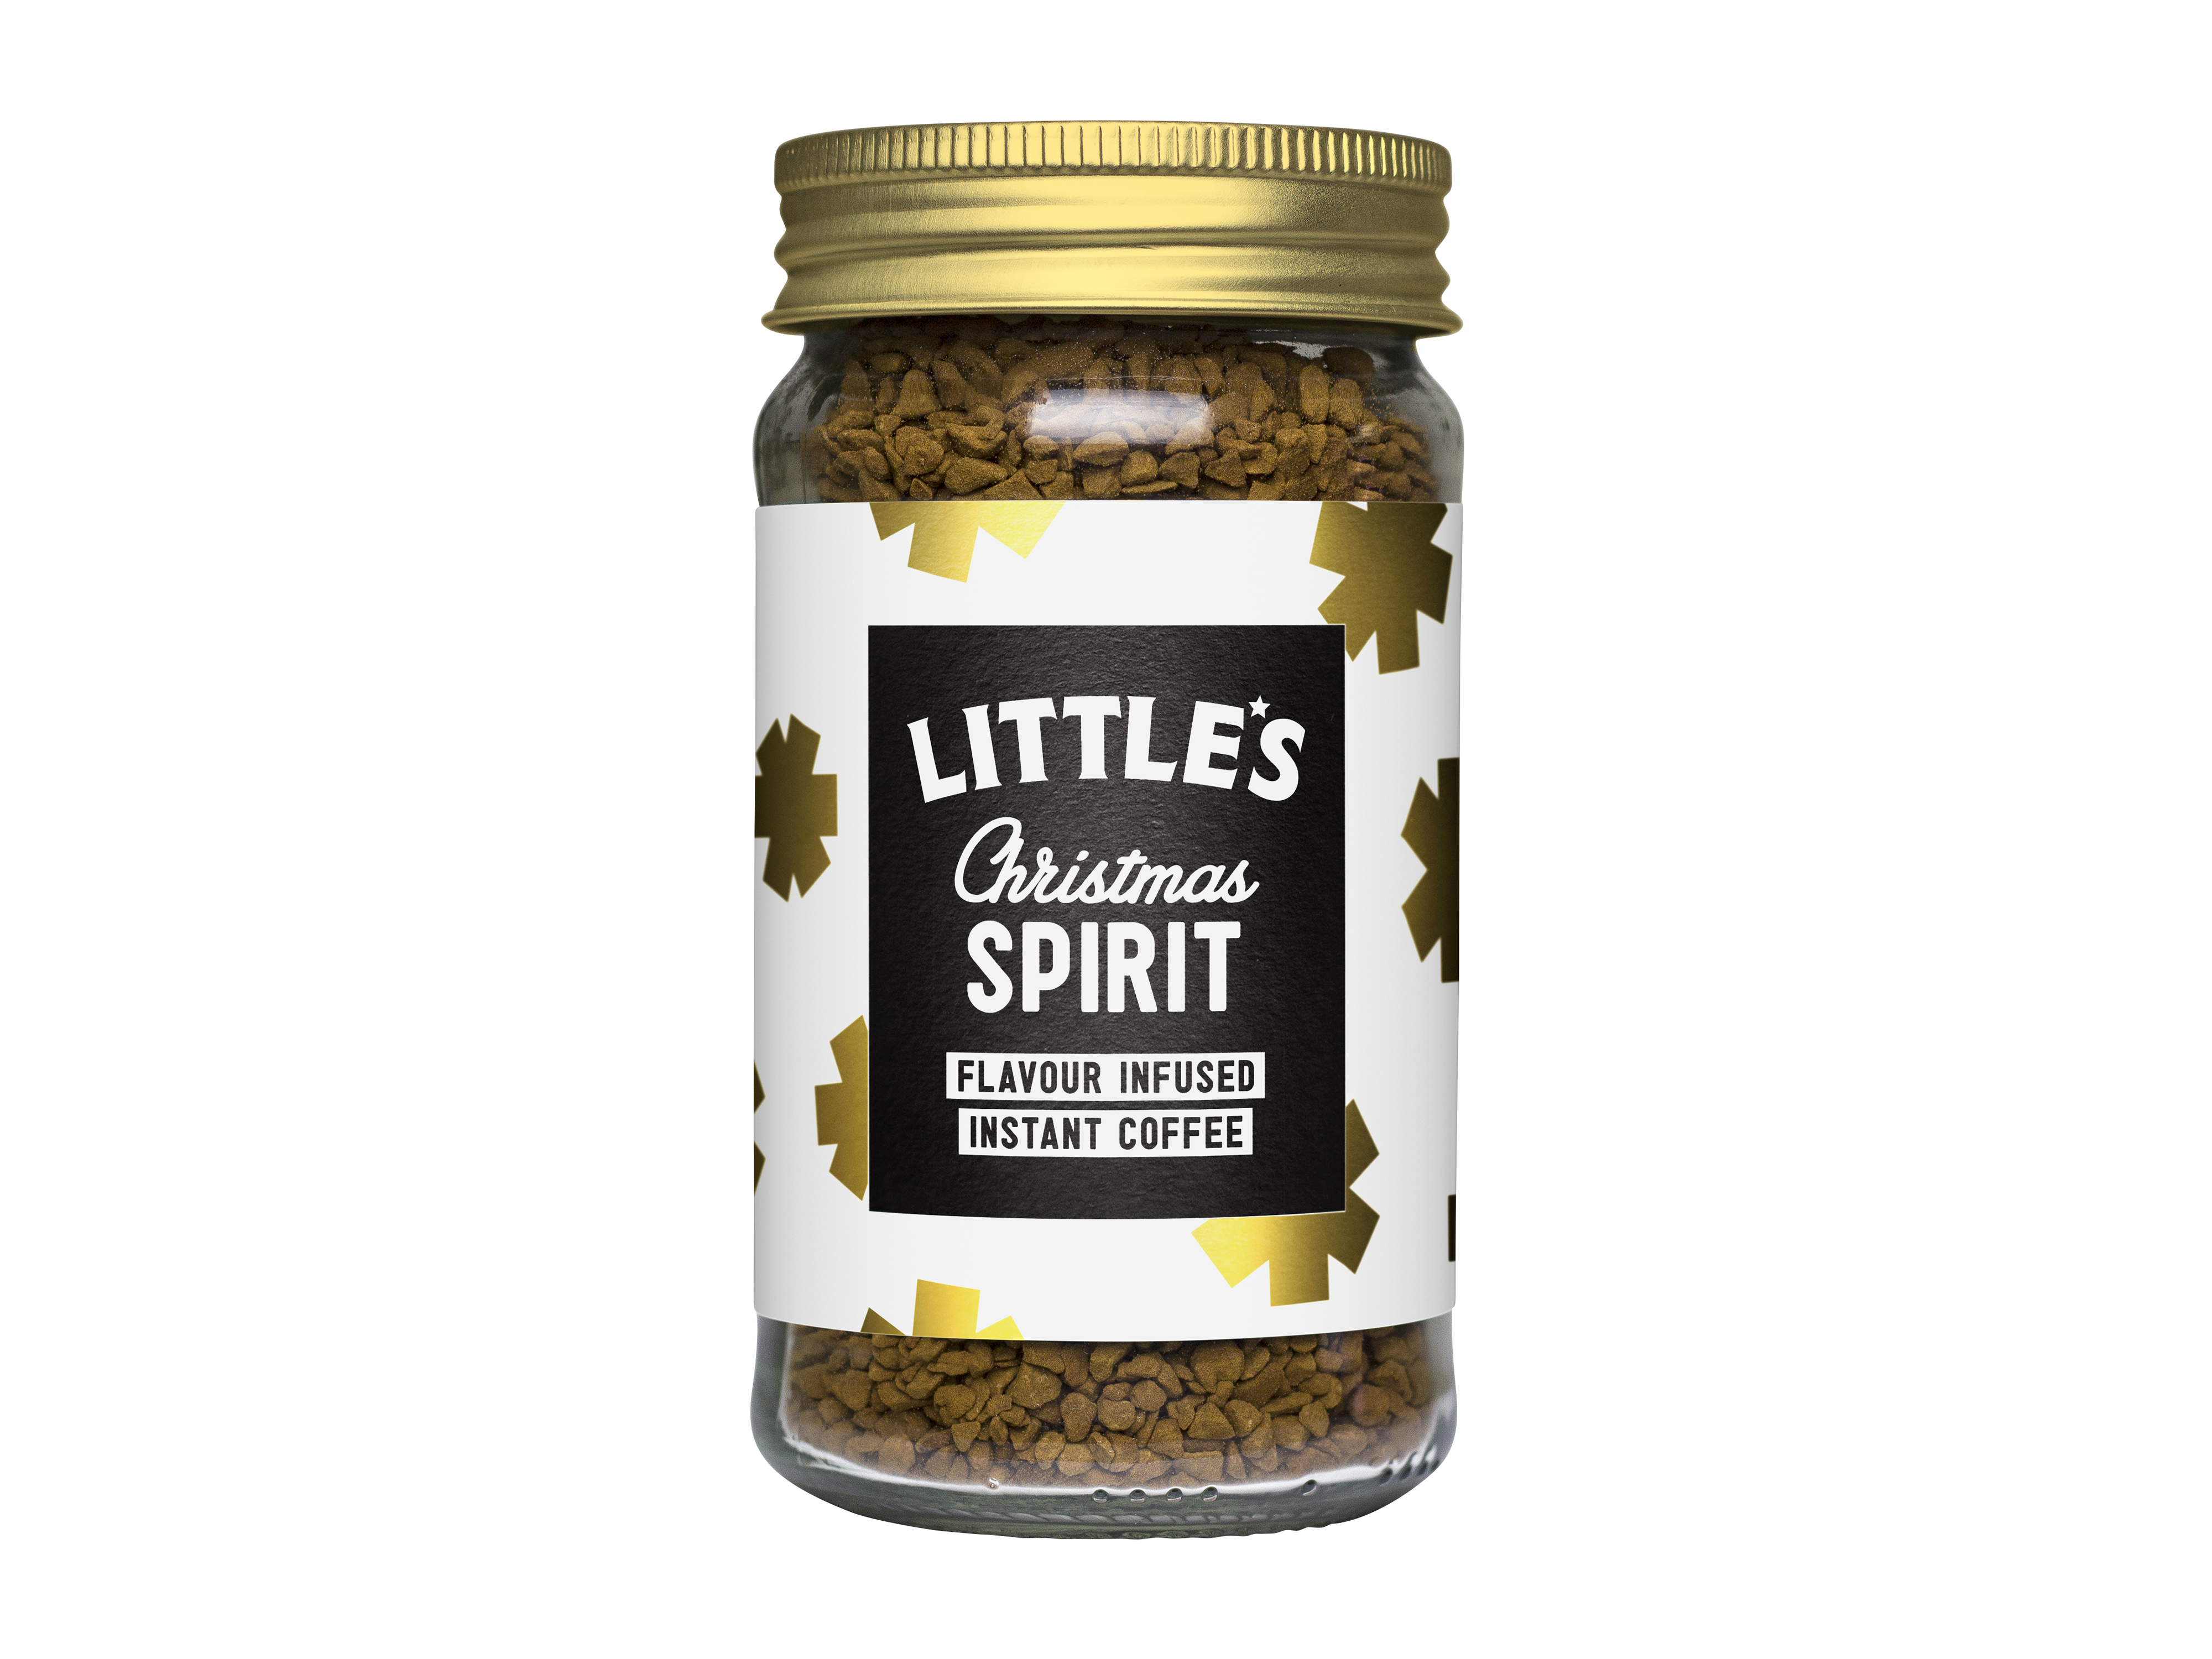 Little's Littles Coffee Christmas Spirit, 50 gram